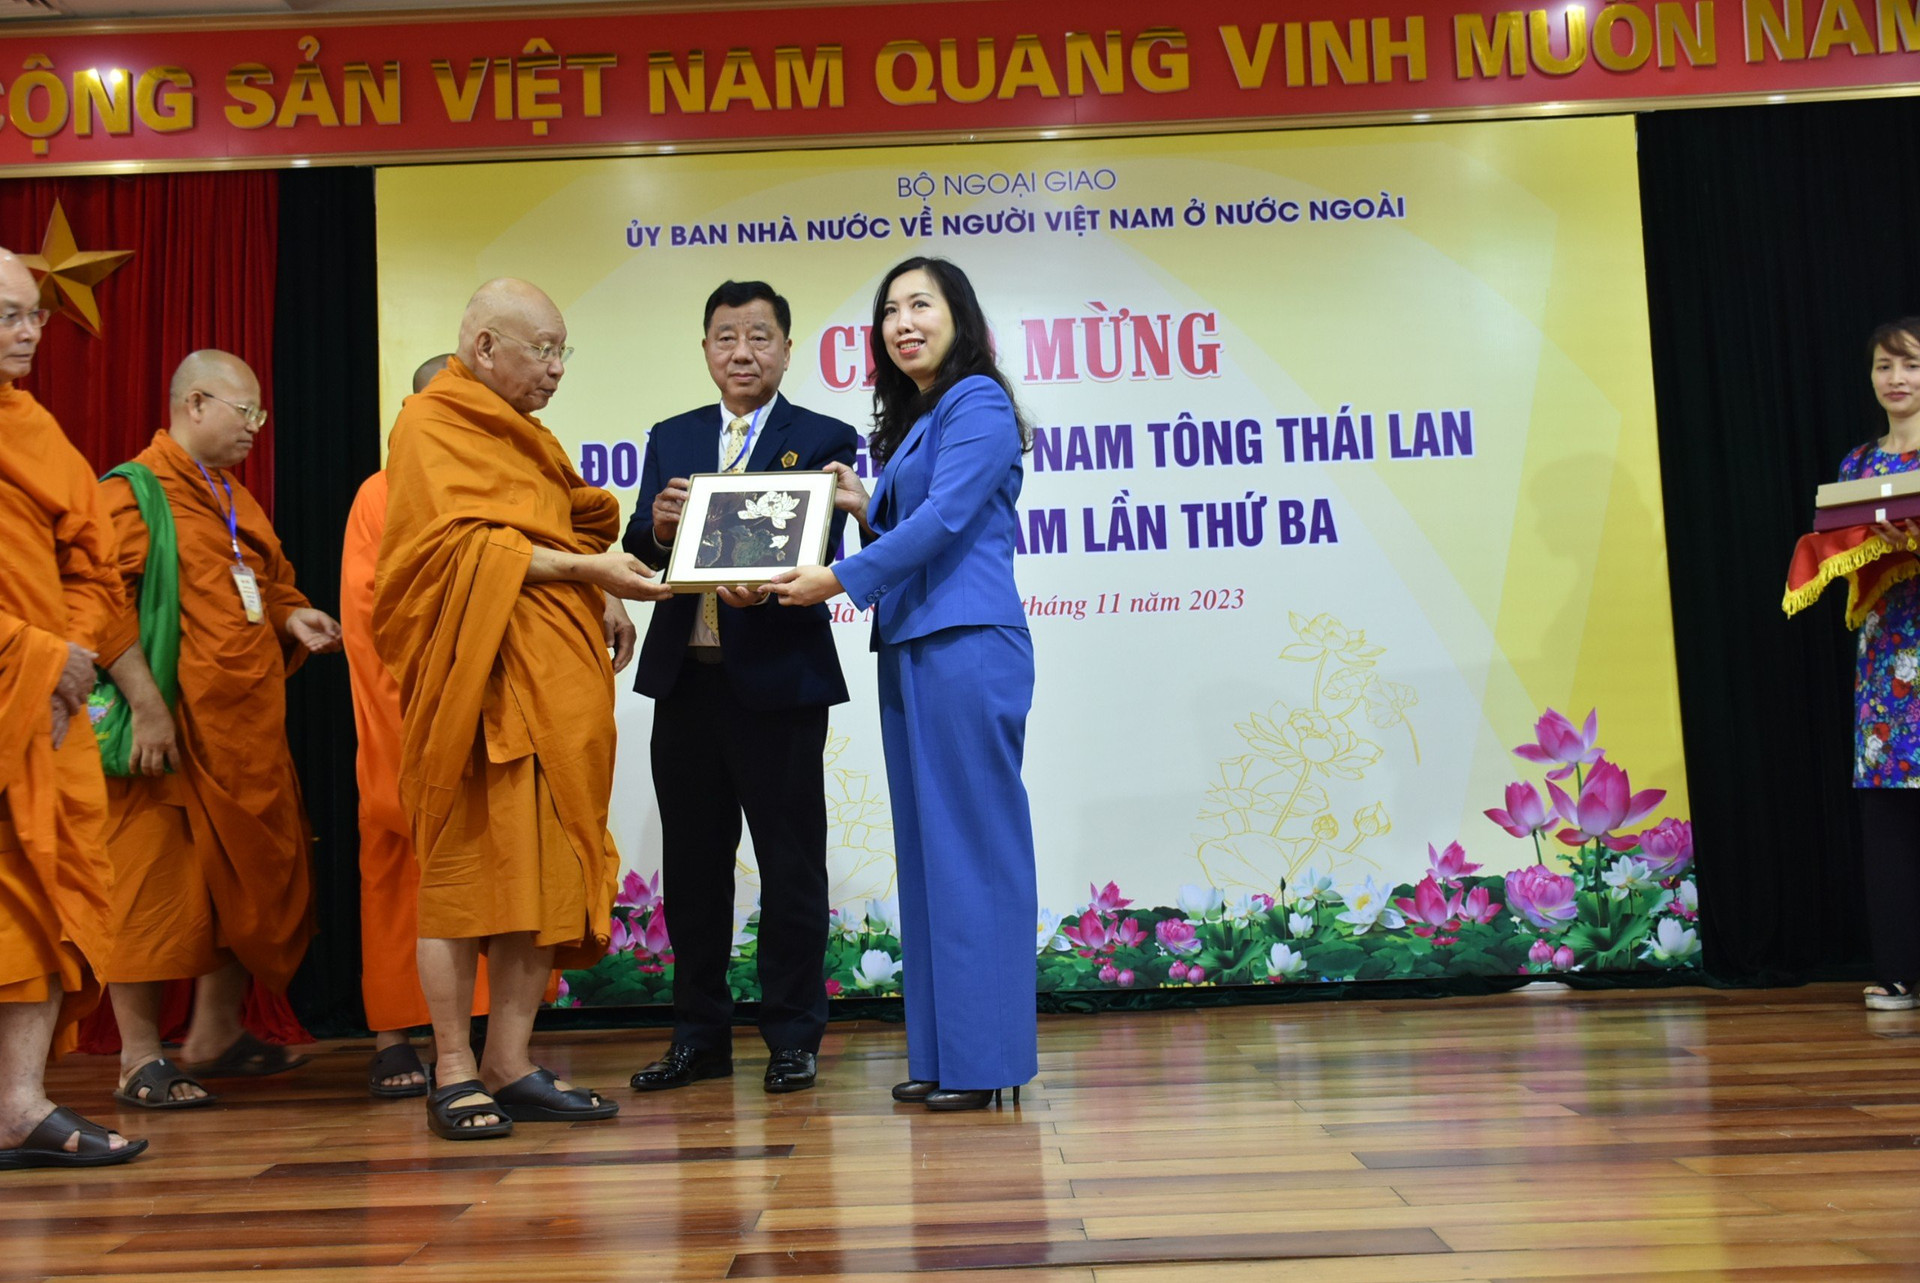 Tông phái Việt tông phát huy vai trò cầu nối giữa nhân dân hai nước Việt Nam - Thái Lan - ảnh 3